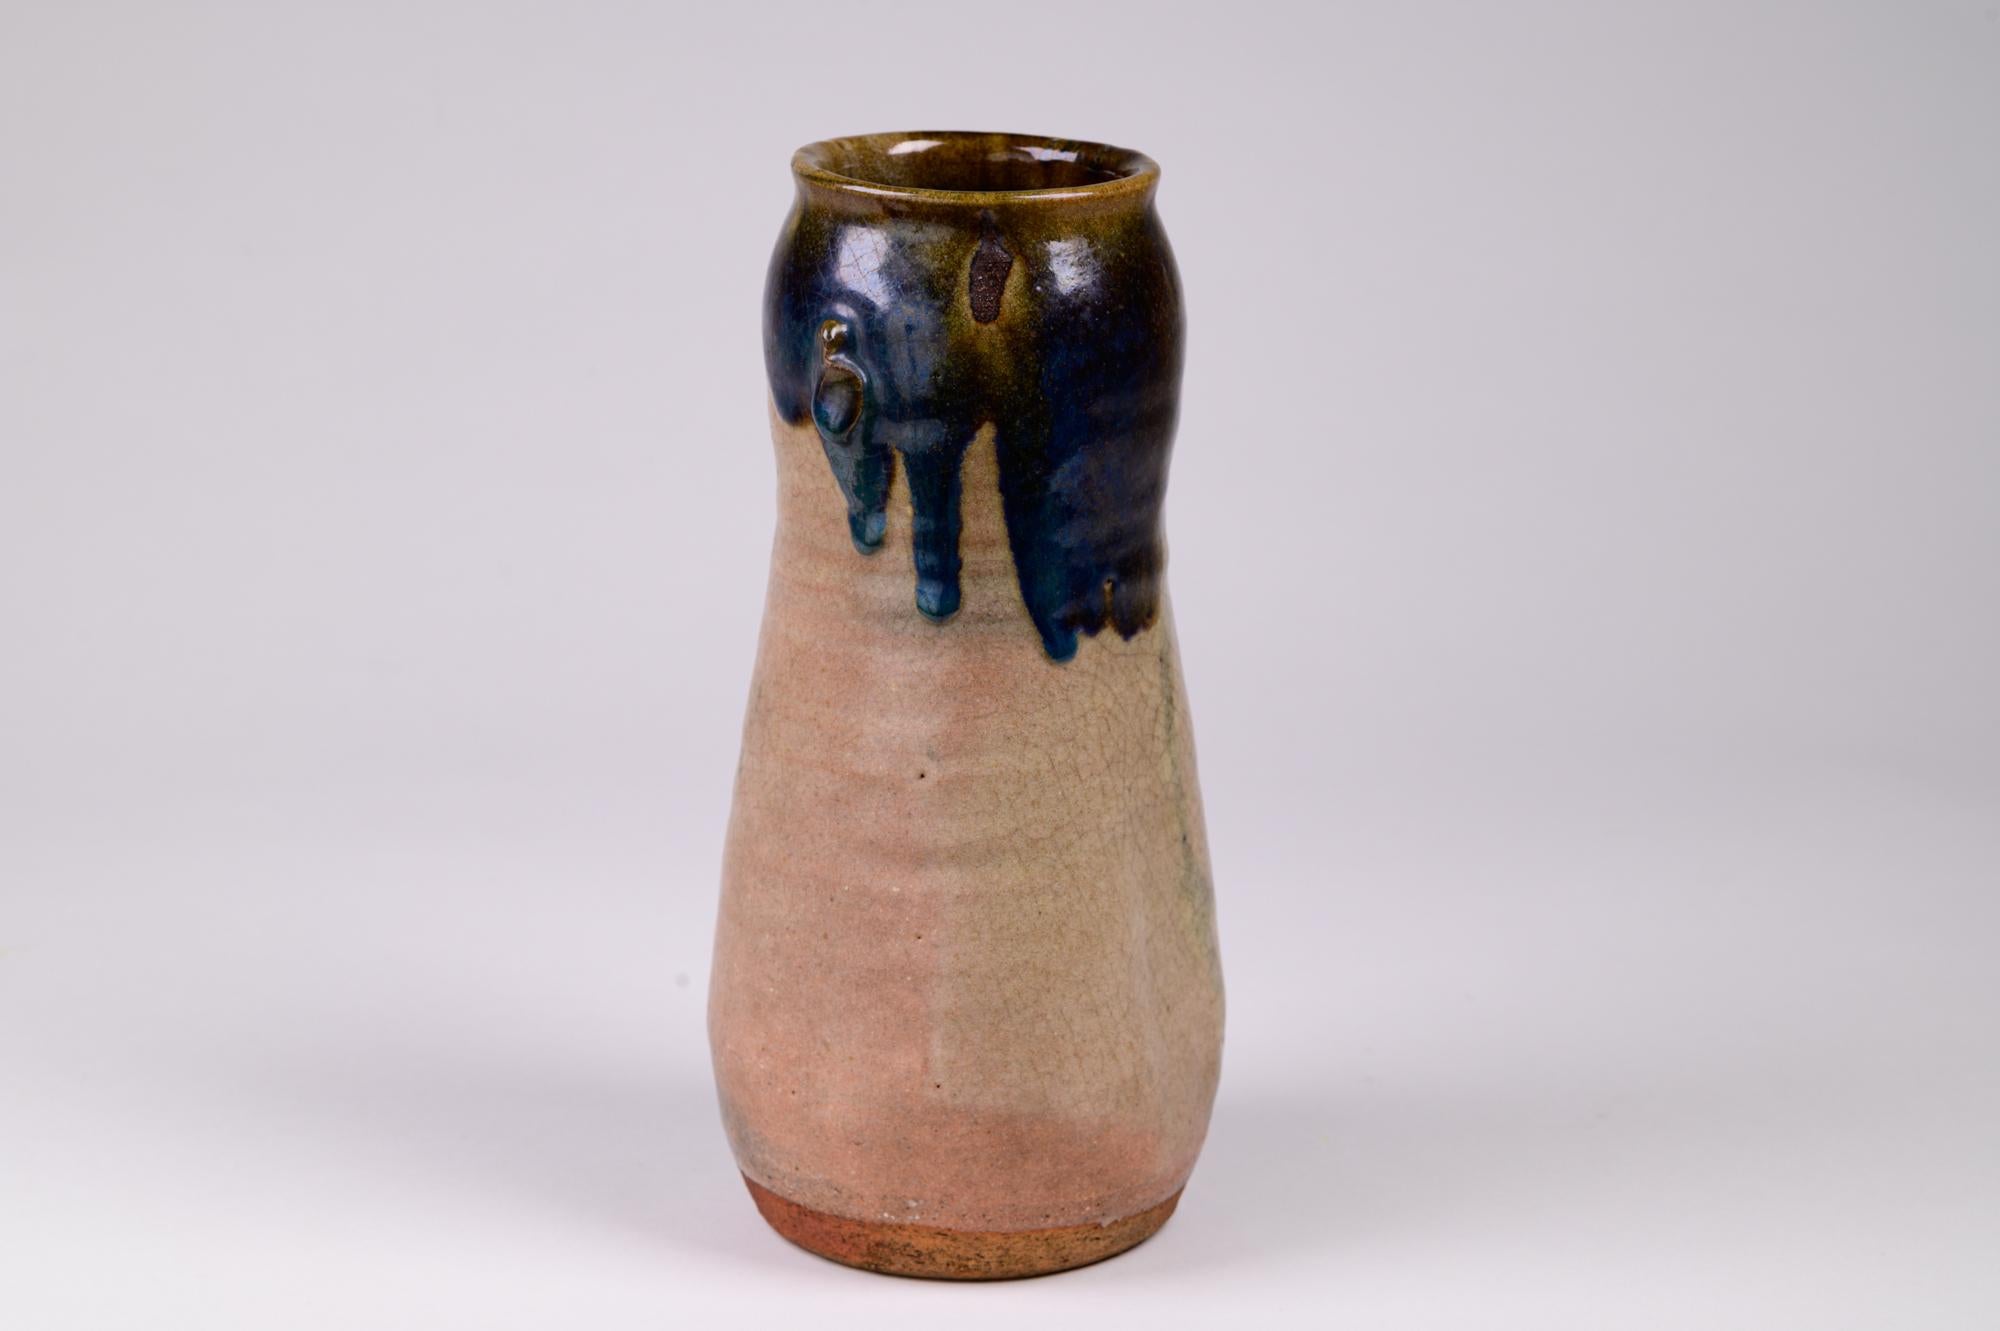 Große, schöne Vase im Landhausstil. Möglicherweise Oribe-Vase mit schöner blau-grüner Tropfglasur und anderen schönen Glasurtechniken. Kleine 